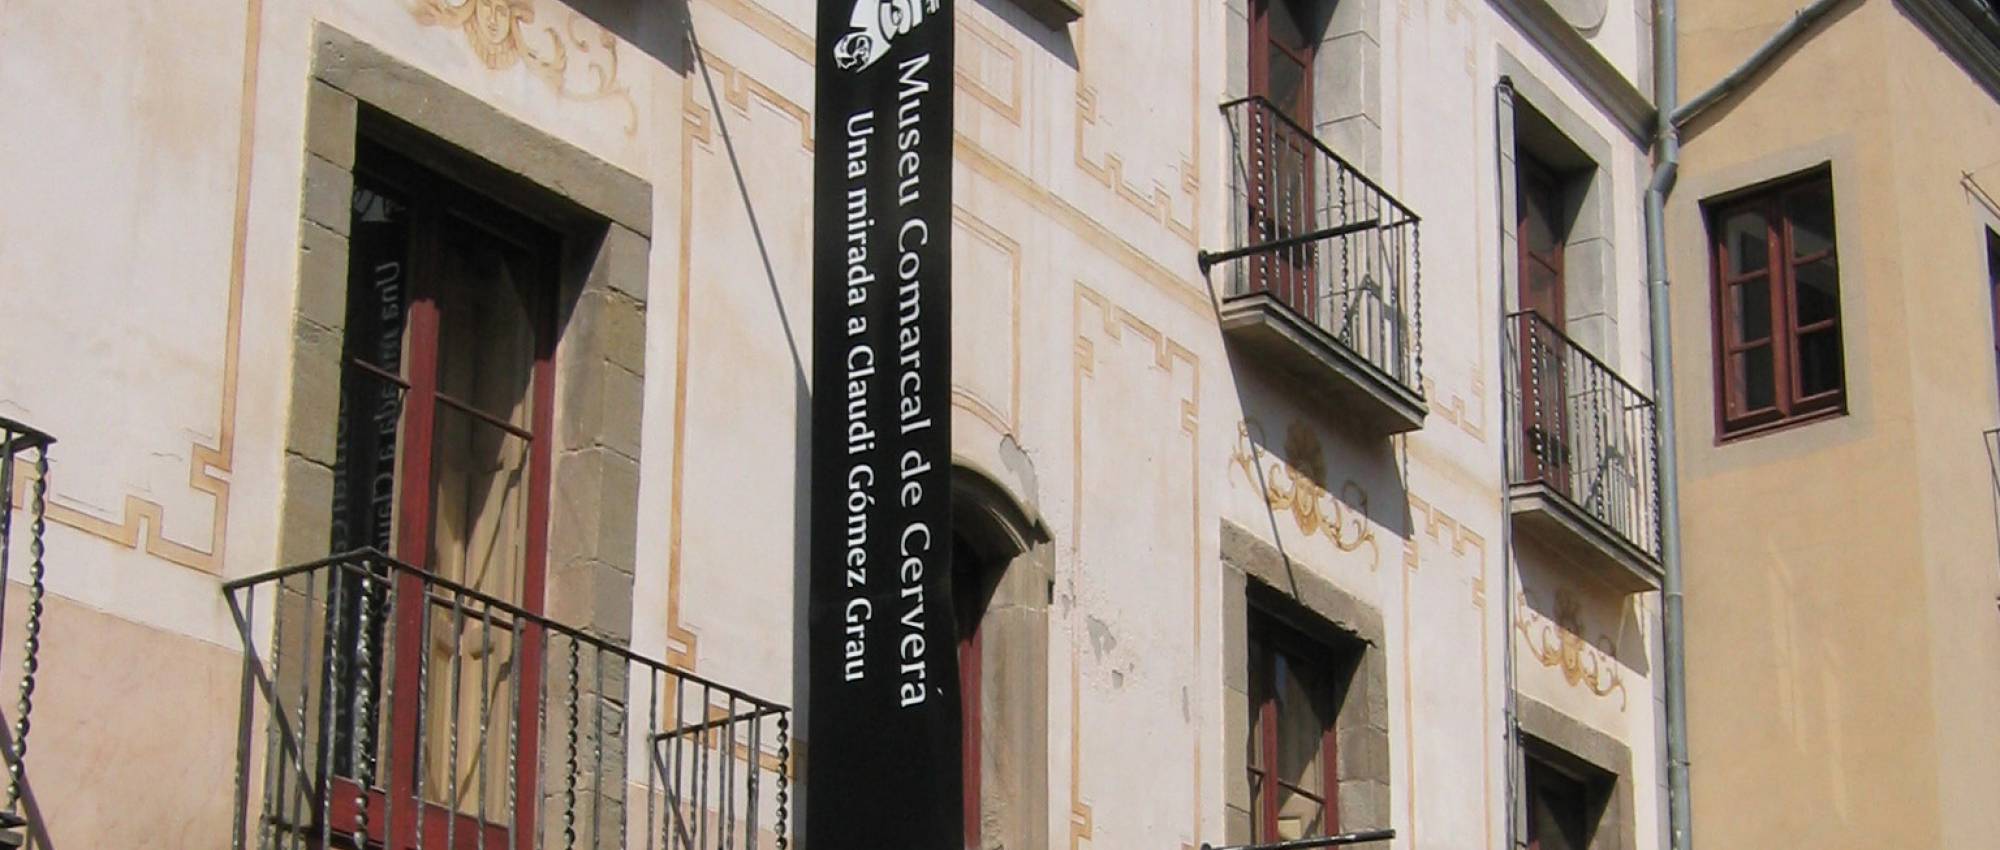 Façana de la Casa Museu Duran i Sanpere de Cervera. CC BY-SA 3.0  - Kippelboy / Wikimedia Commons